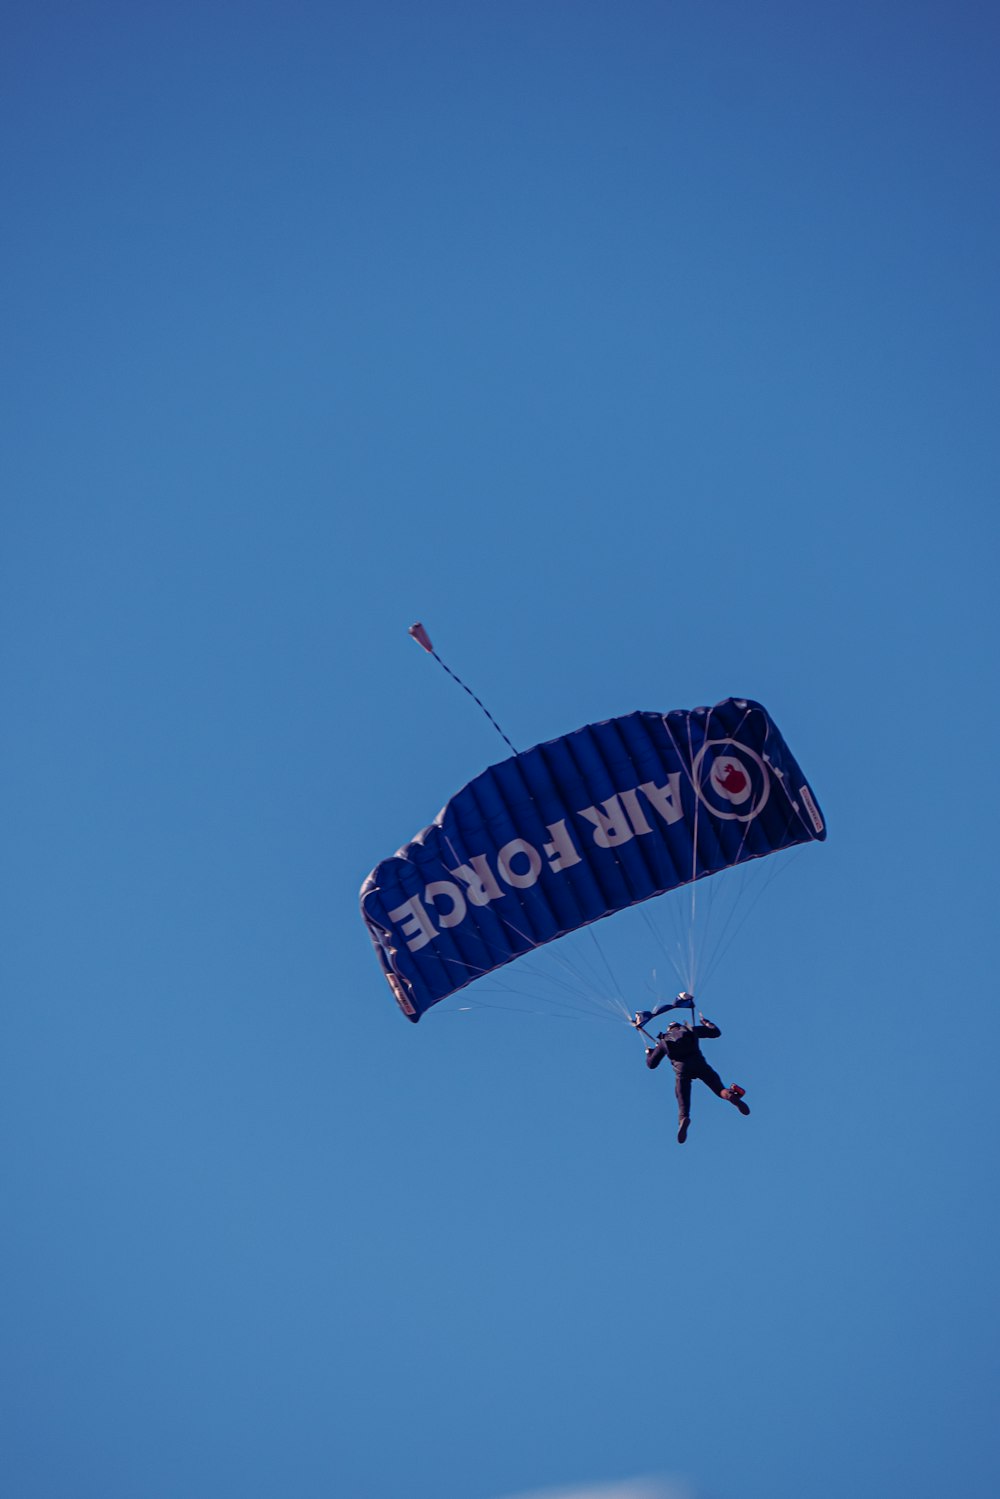 uma pessoa está parasailing no céu azul